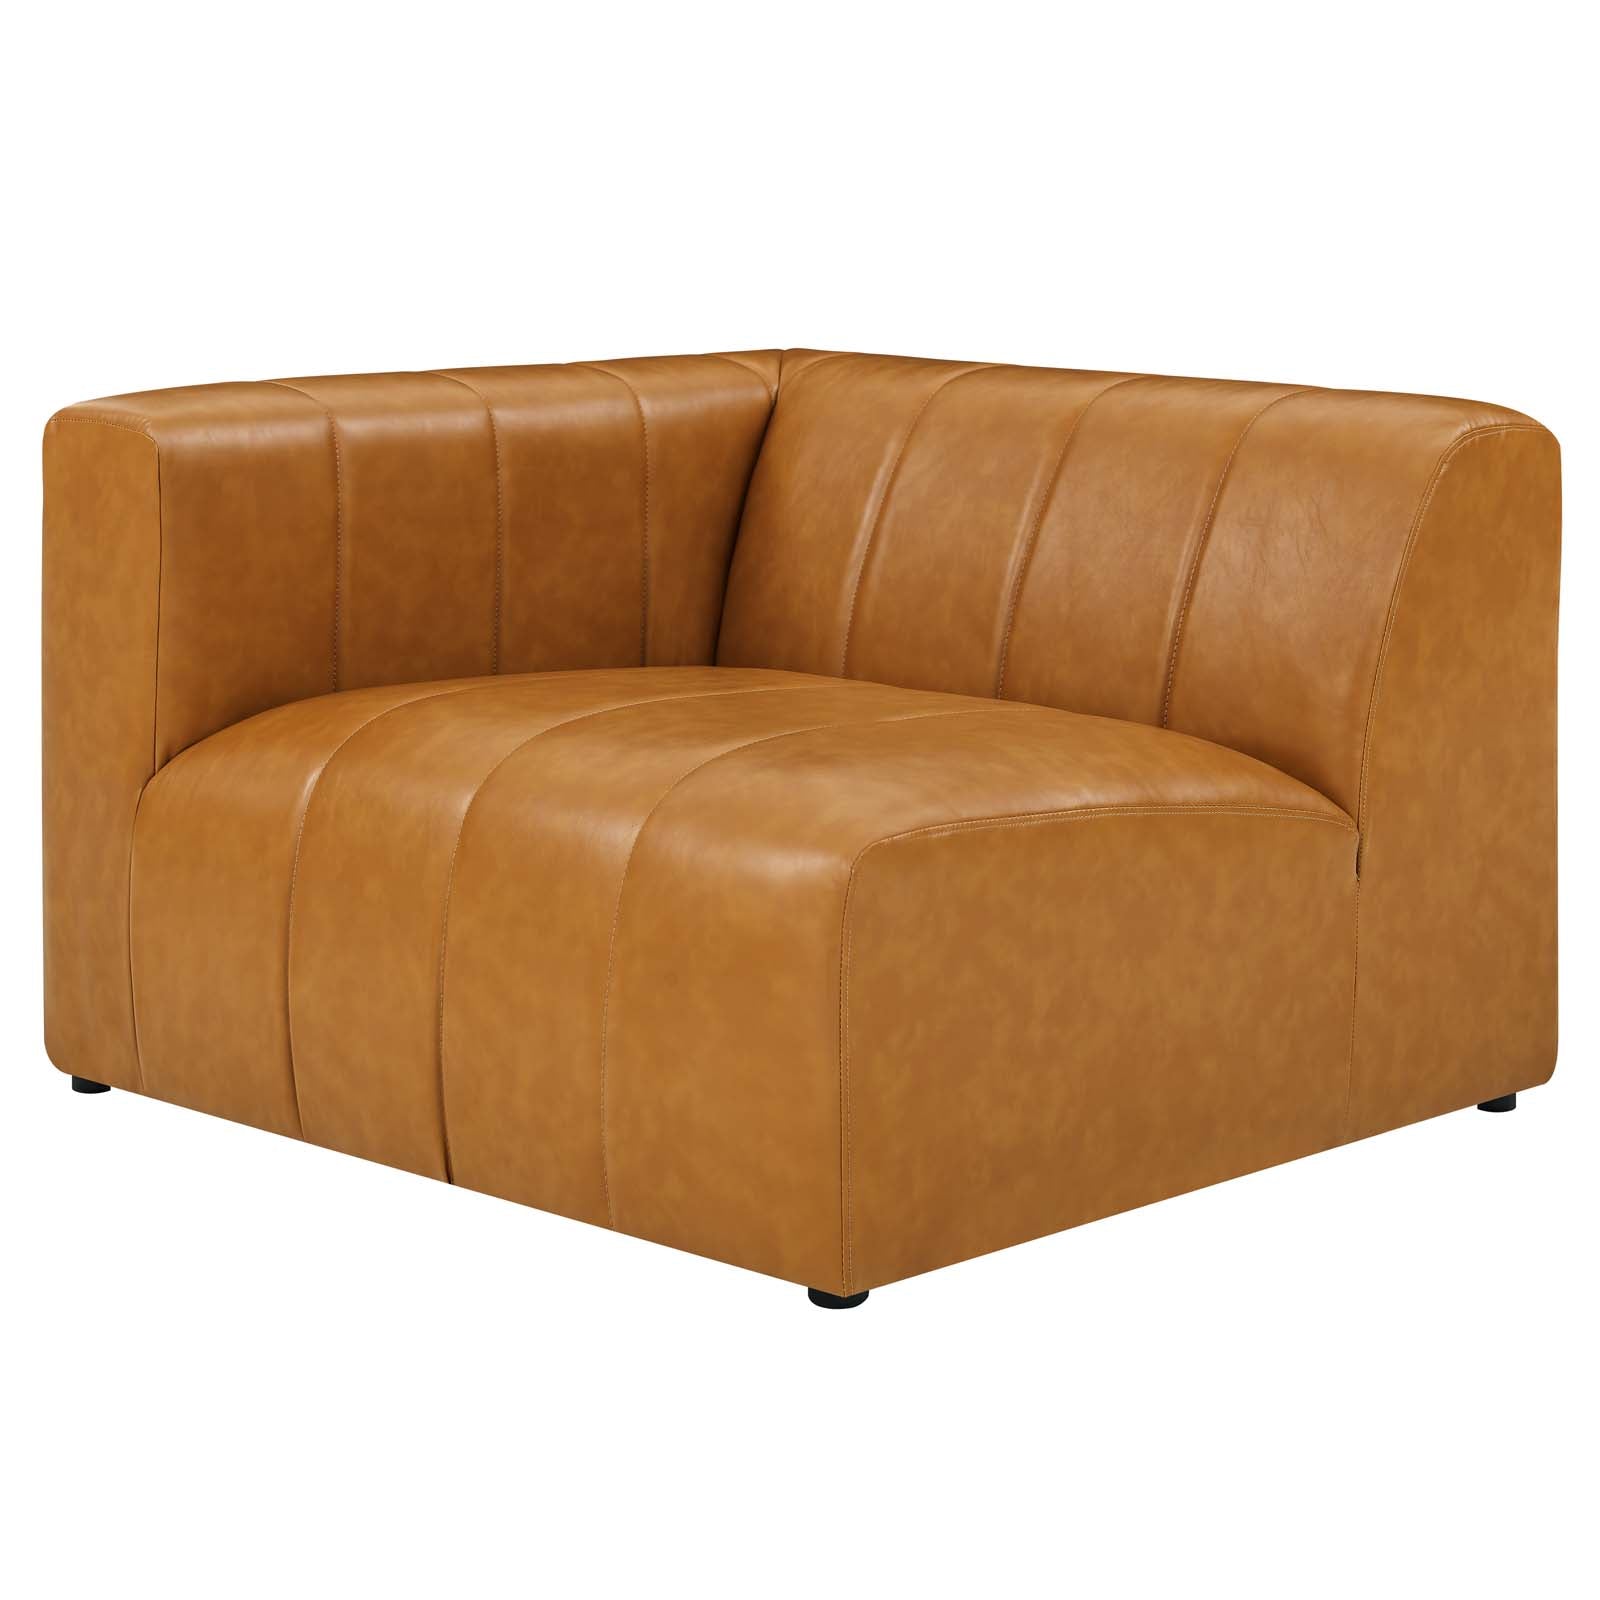 Bartlett Vegan Leather Left-Arm Chair - East Shore Modern Home Furnishings